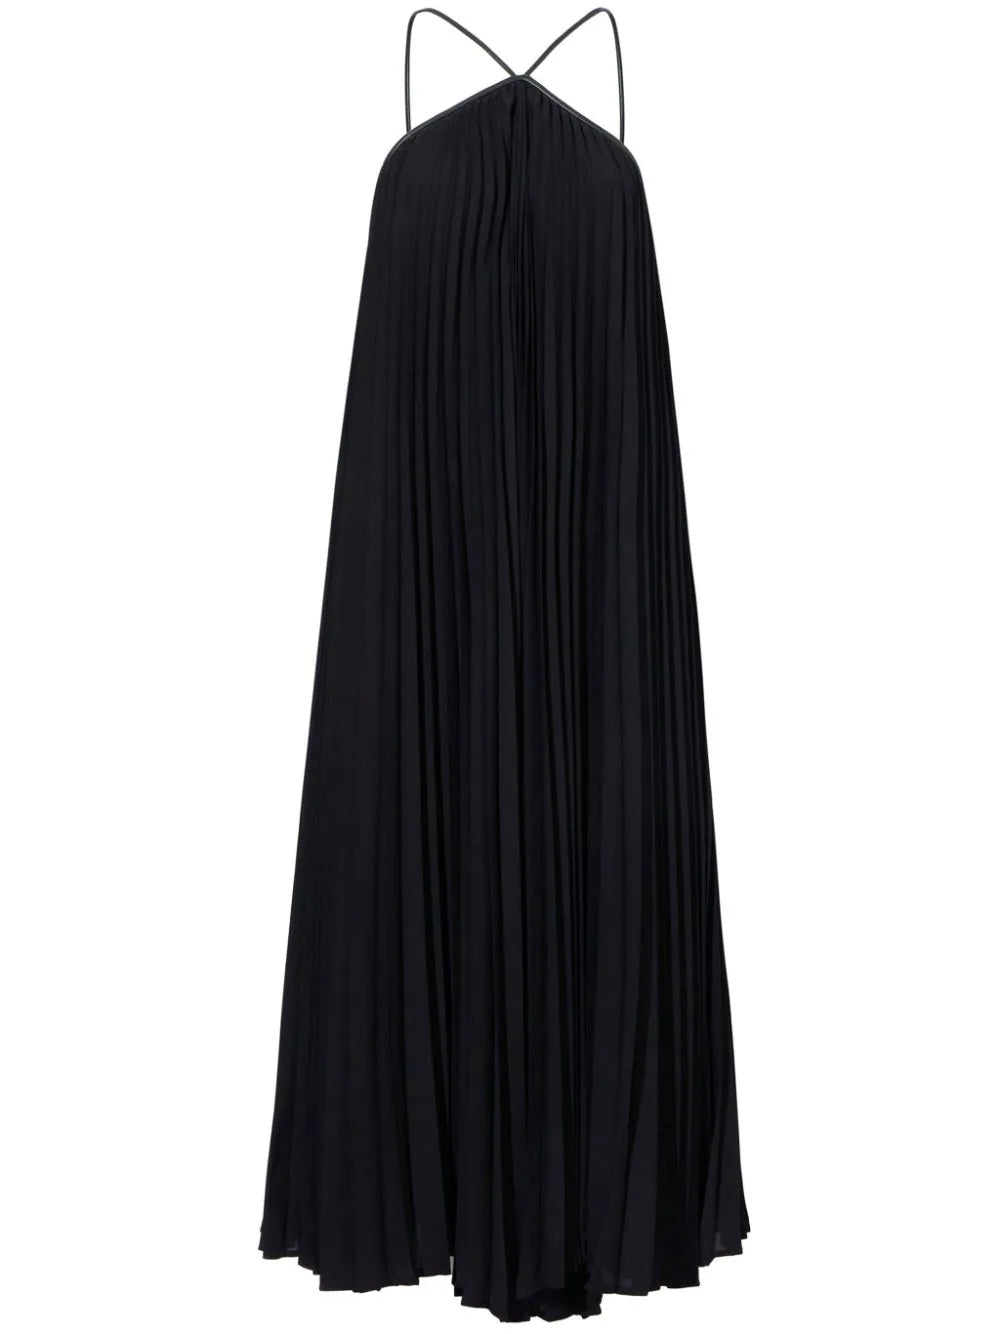 Celeste Dress in Black